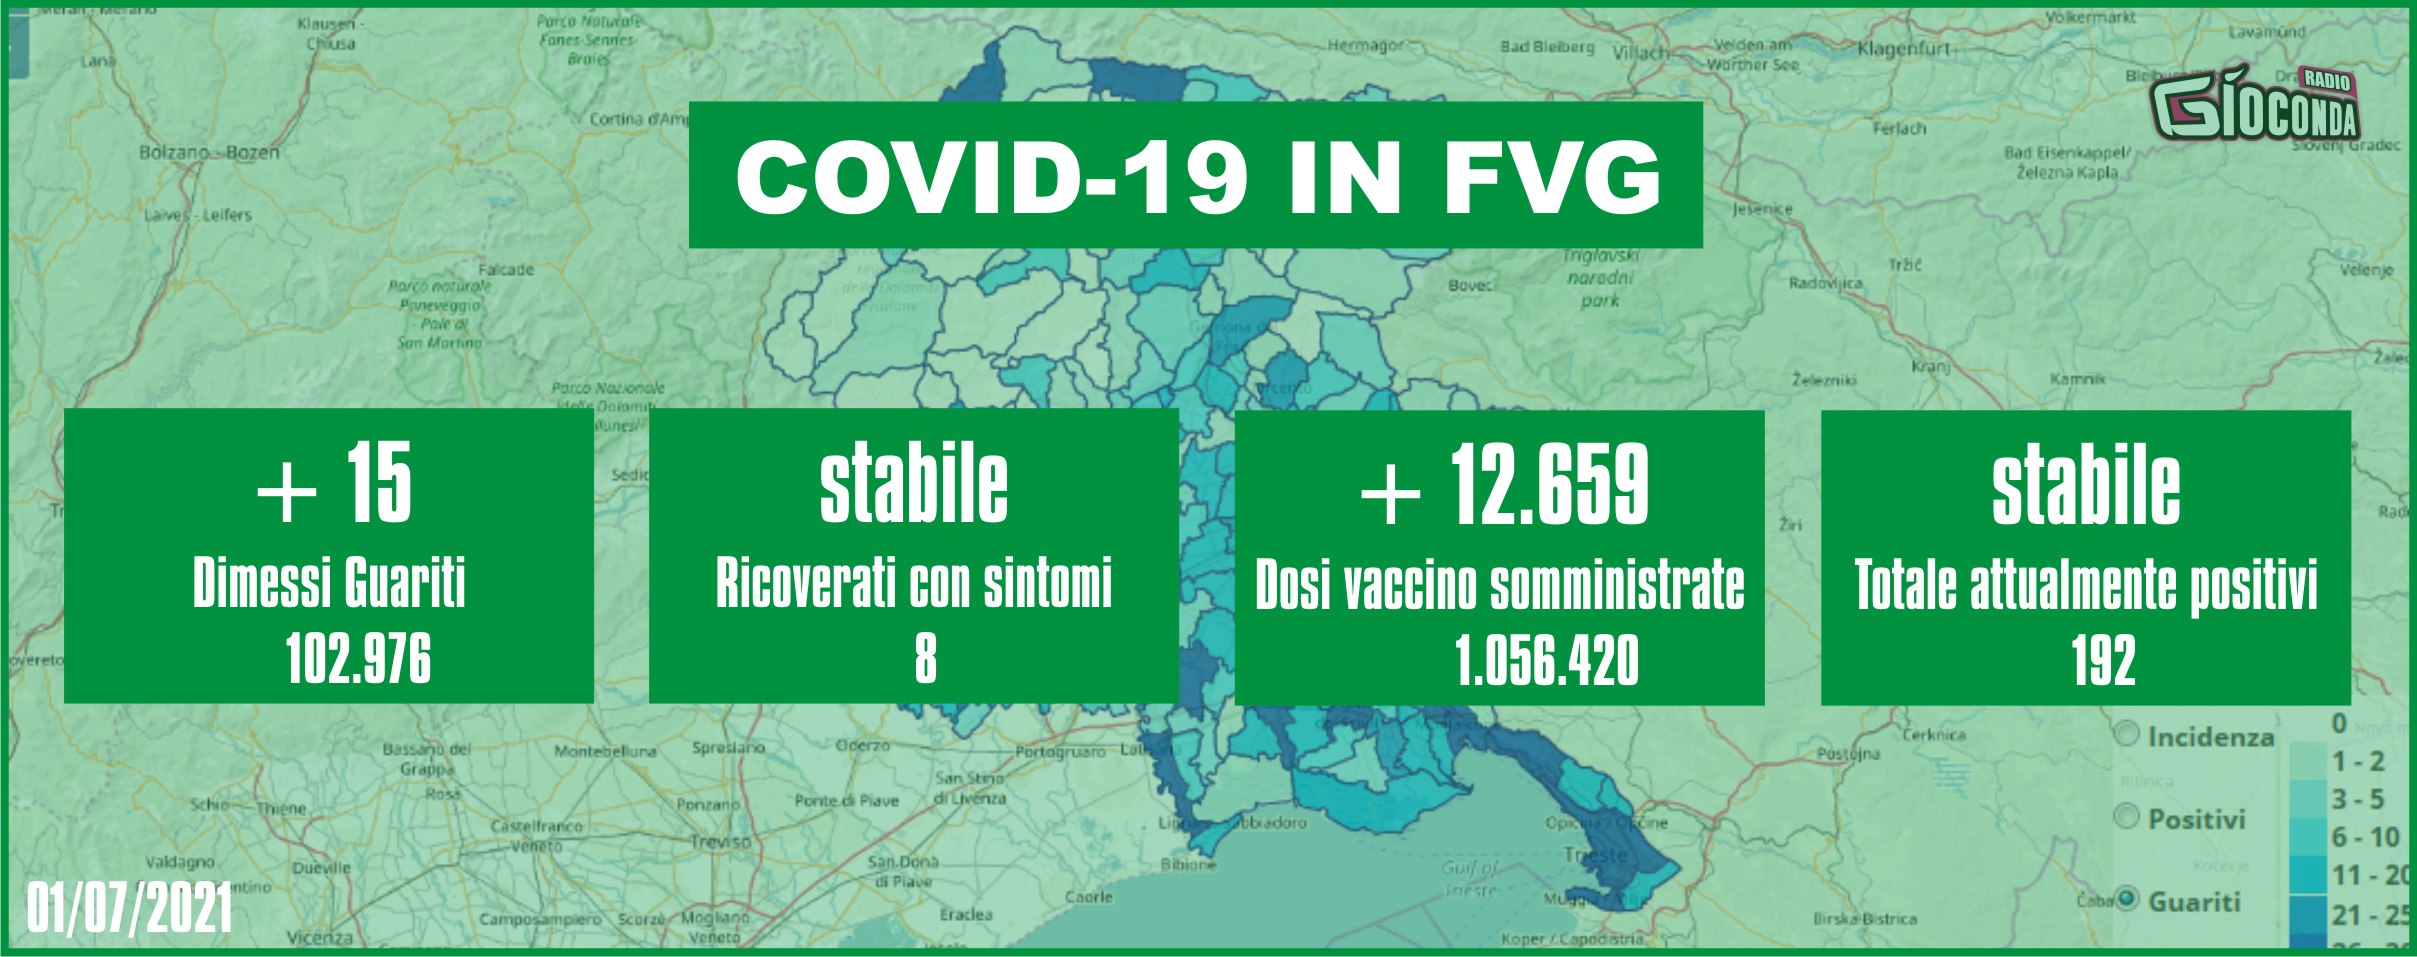 1 luglio 2021 - Aggiornamento casi Covid-19 Dati aggregati quotidiani FRIULI VENEZIA GIULIA